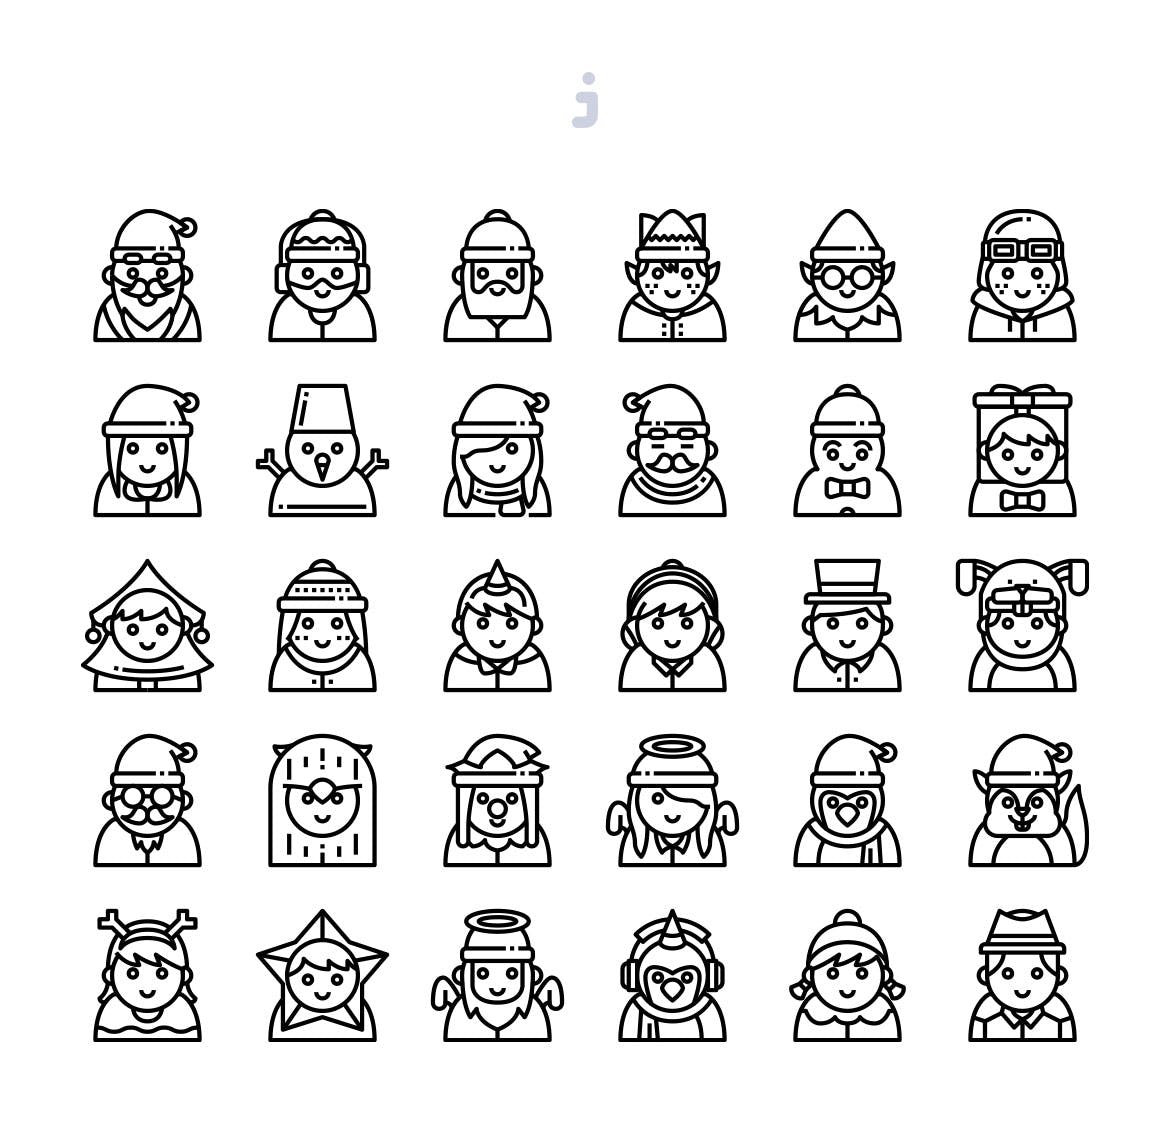 30枚圣诞节彩色人物头像图标 30 Christmas Avatar Icons插图2